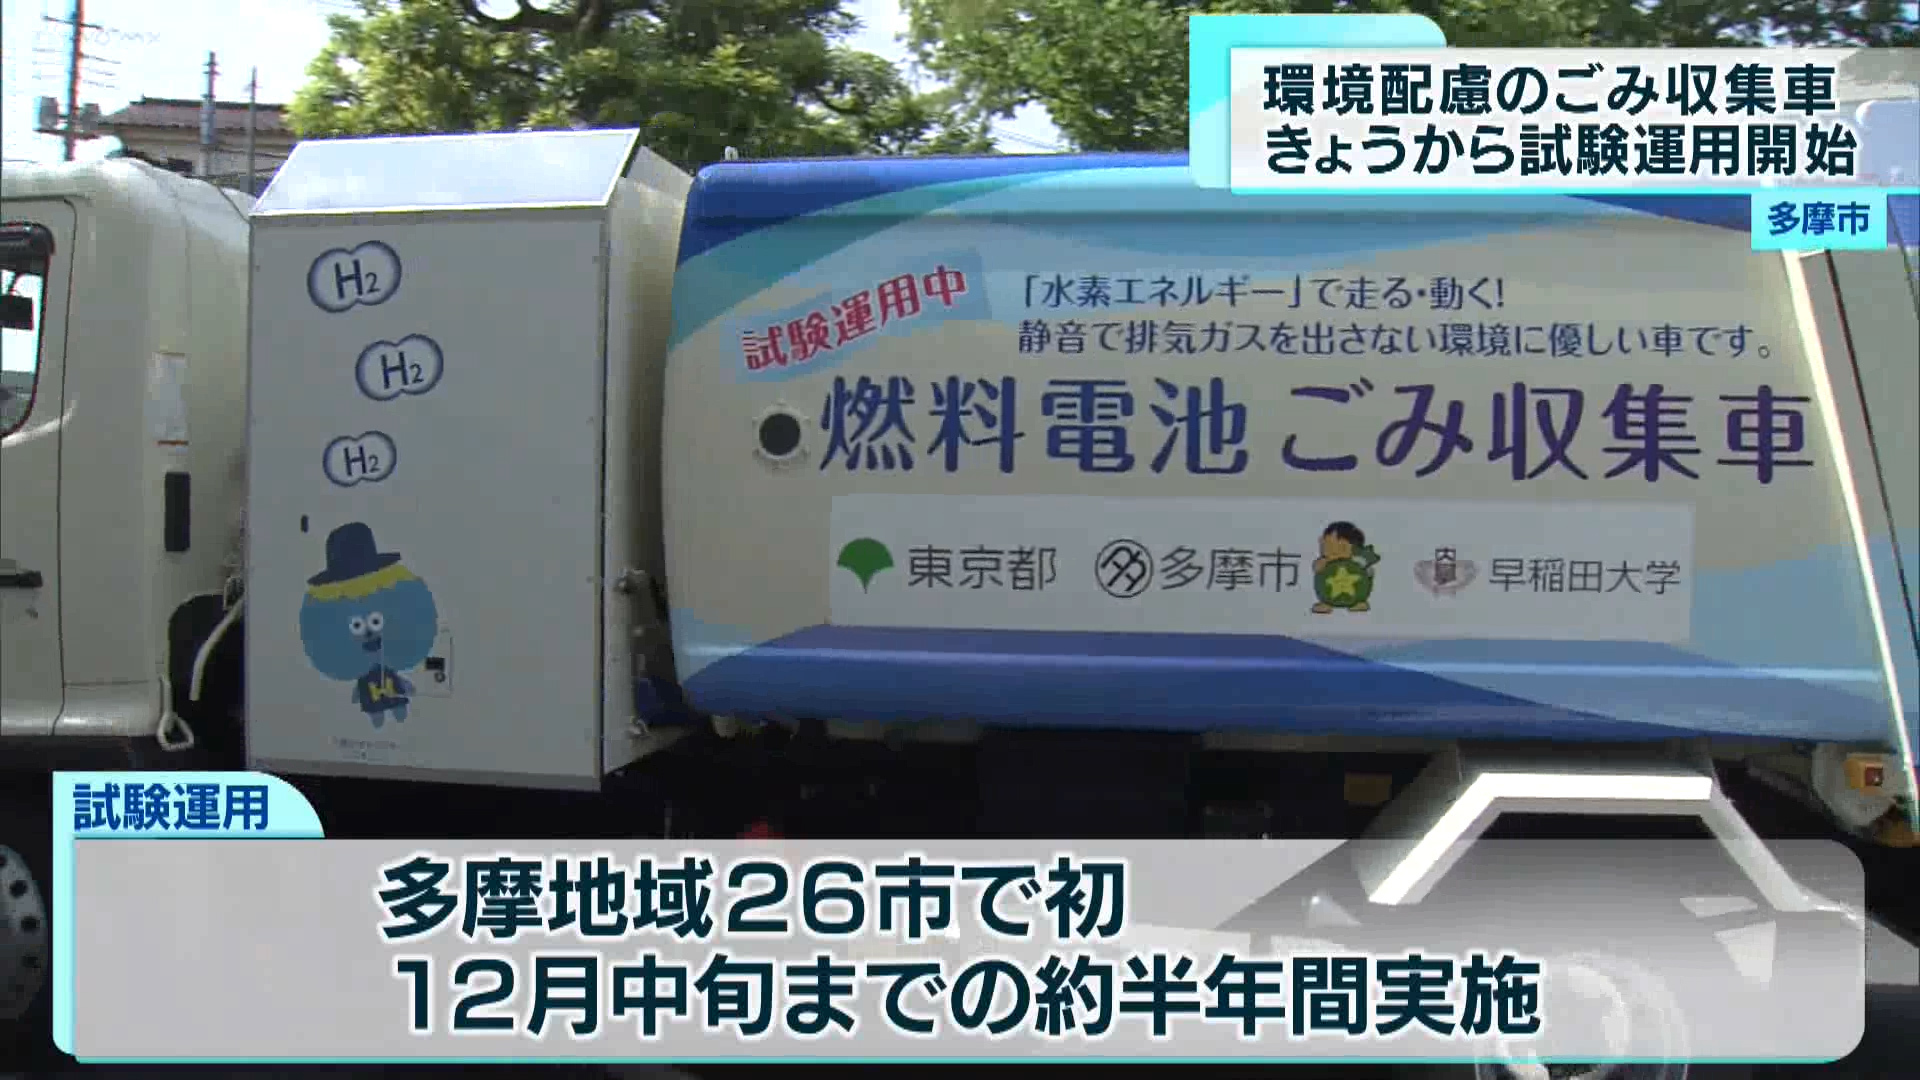 多摩市は東京都などと連携して、燃料電池を活用したごみ収集車の試験運用を始めました。多摩地域で初の試みです。